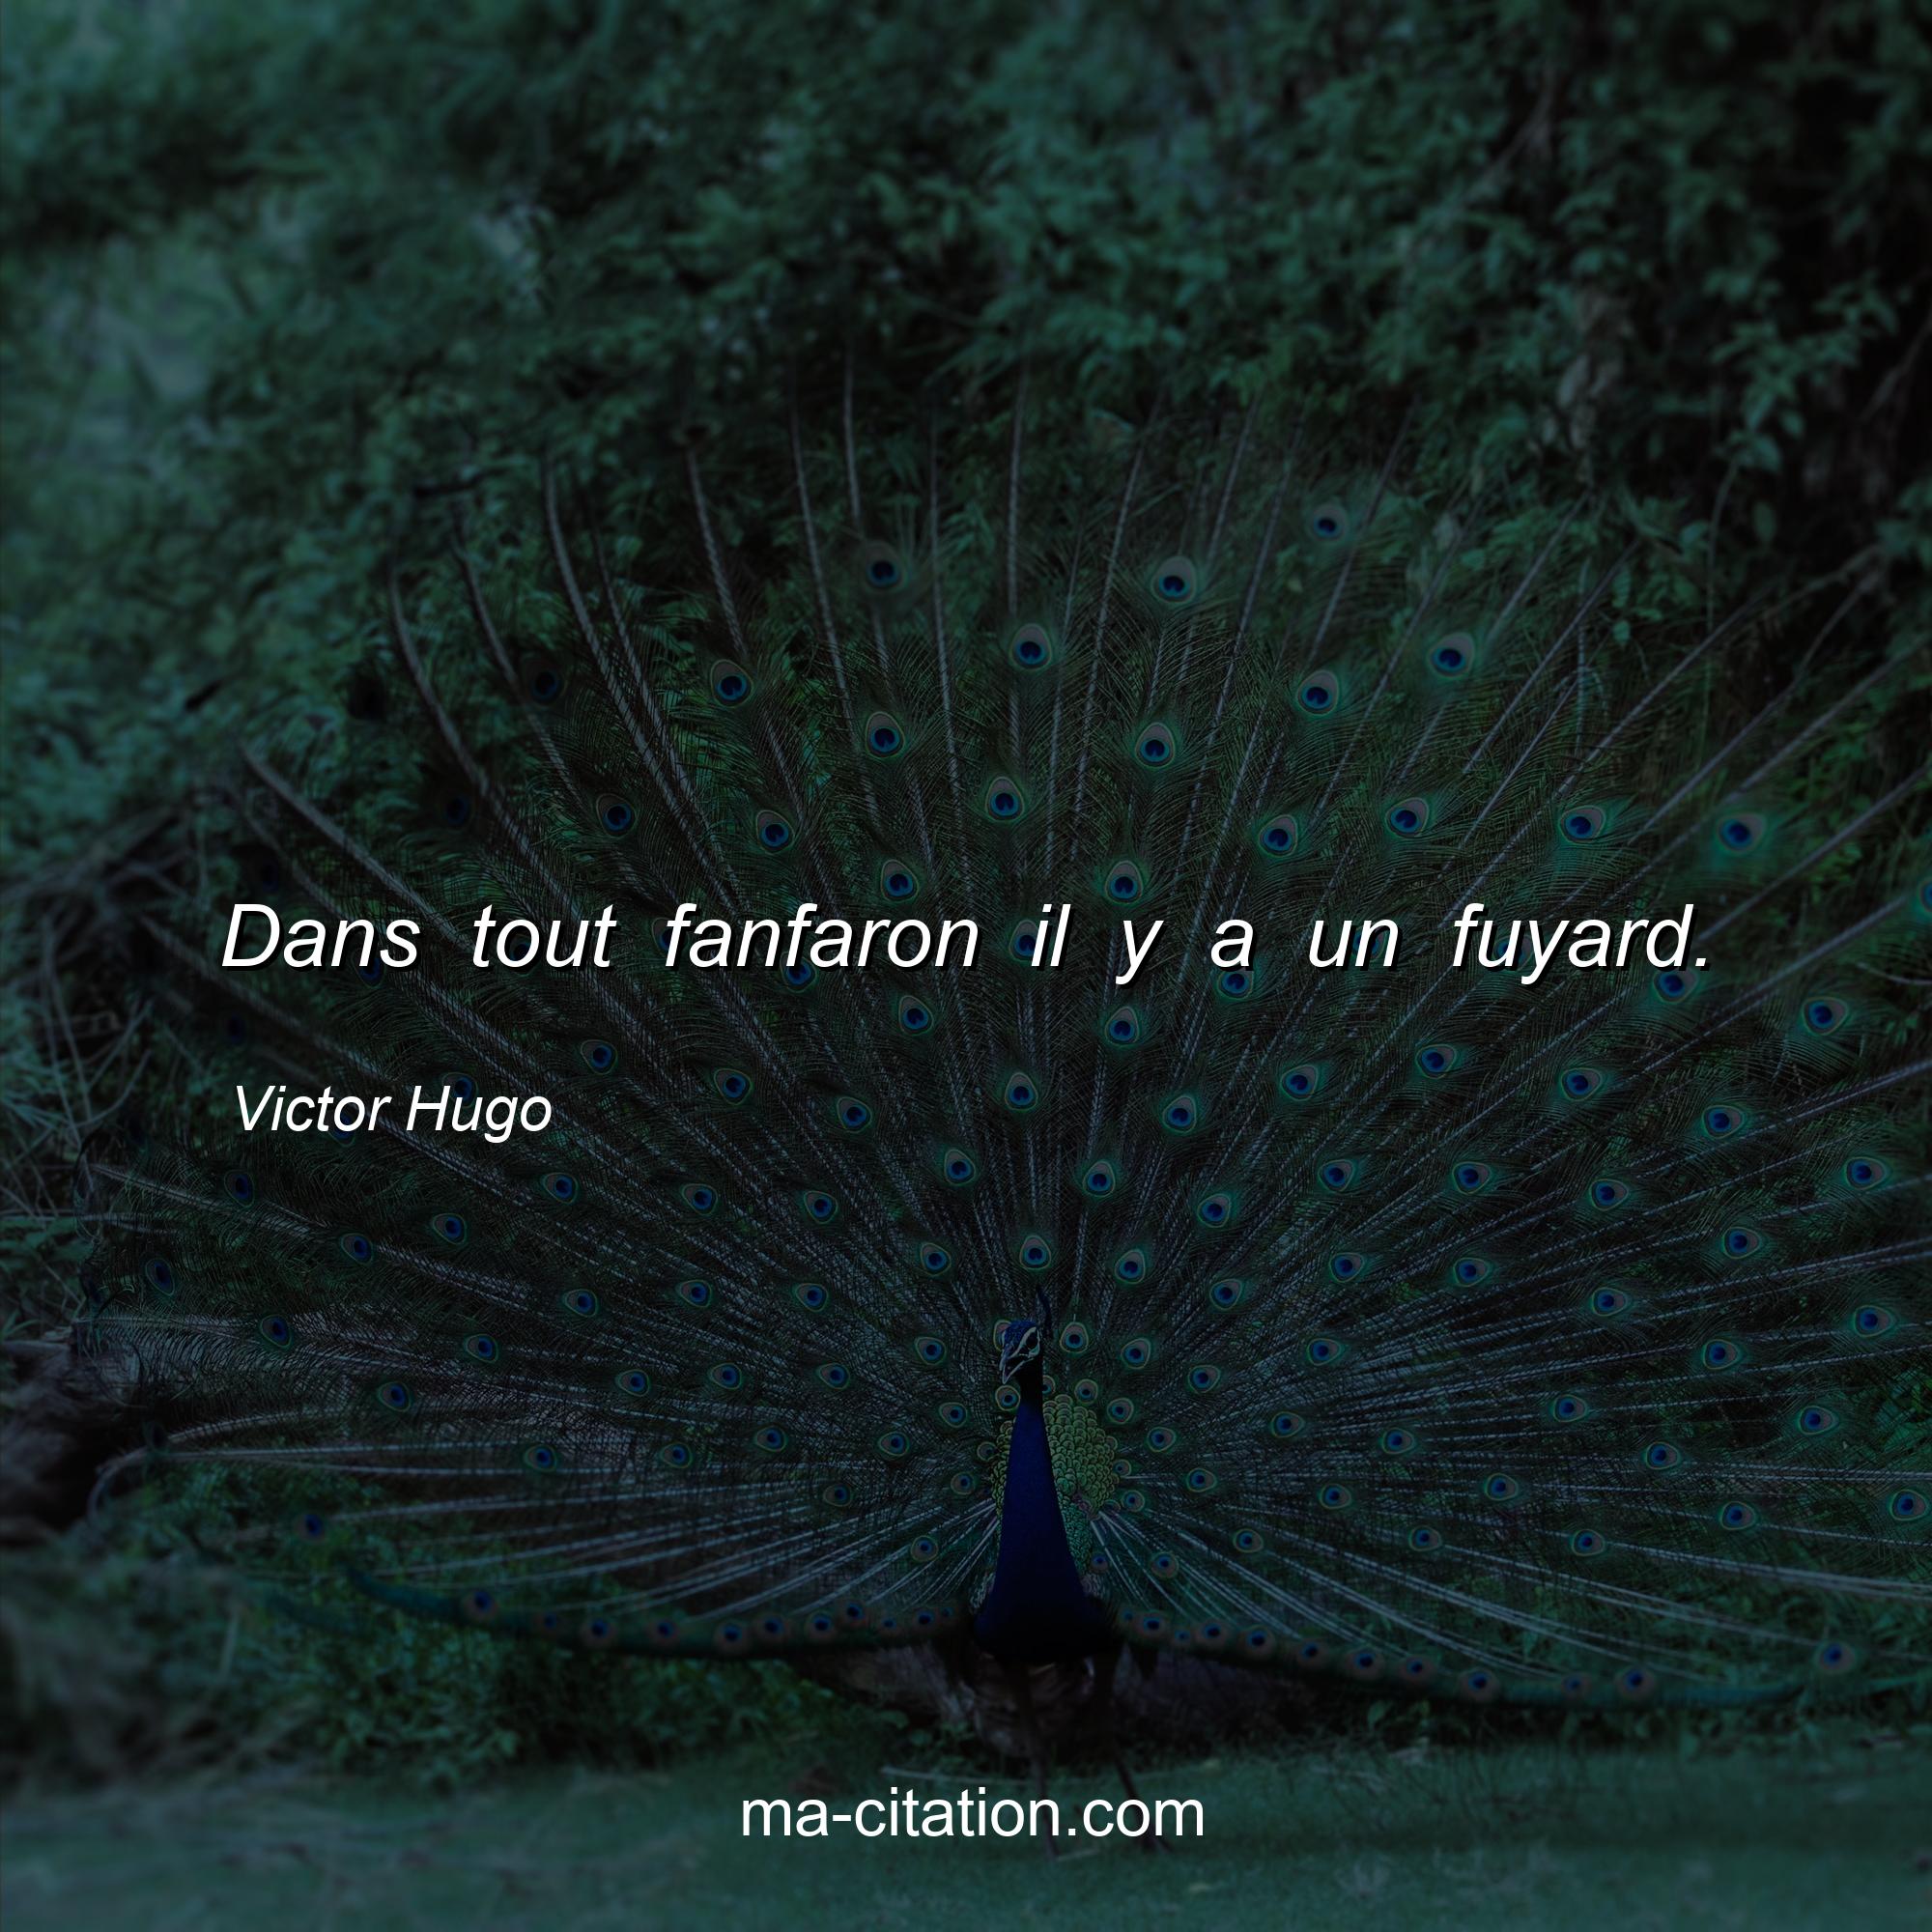 Victor Hugo : Dans tout fanfaron il y a un fuyard.